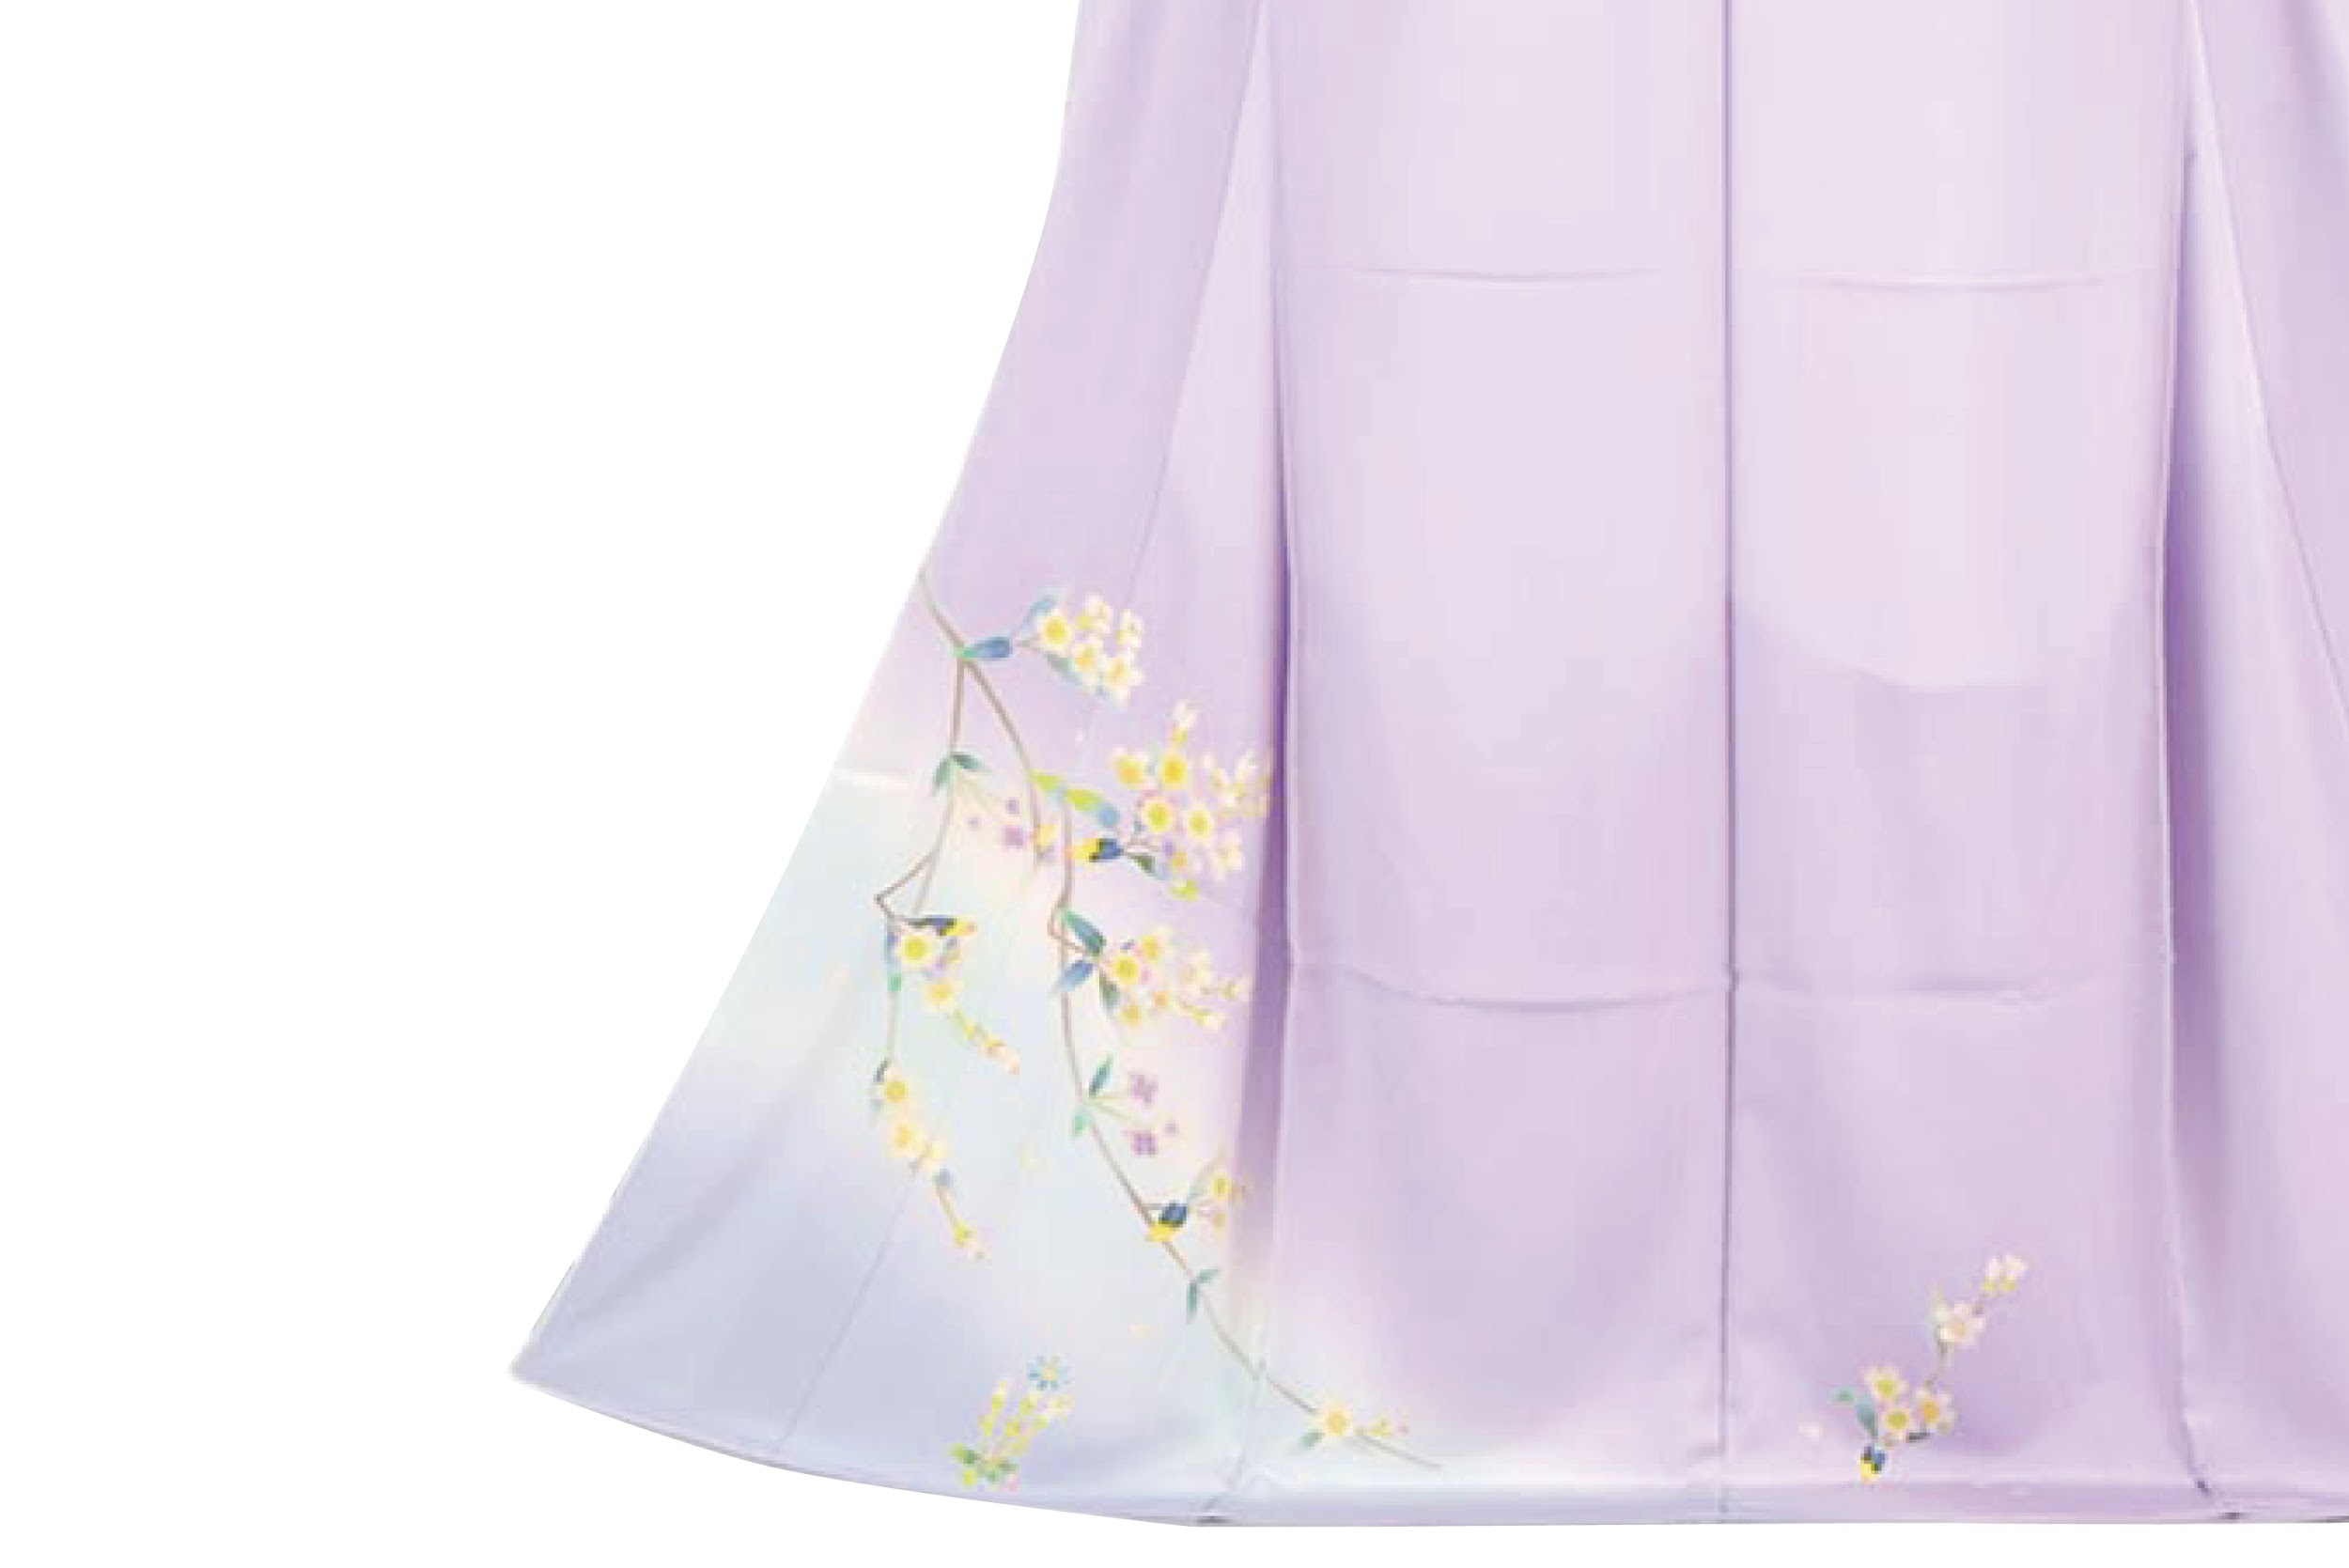 着物で広がる彩りの世界 紫 色の印象 コーディネートを学ぶ 着物 和 京都に関する情報ならきものと